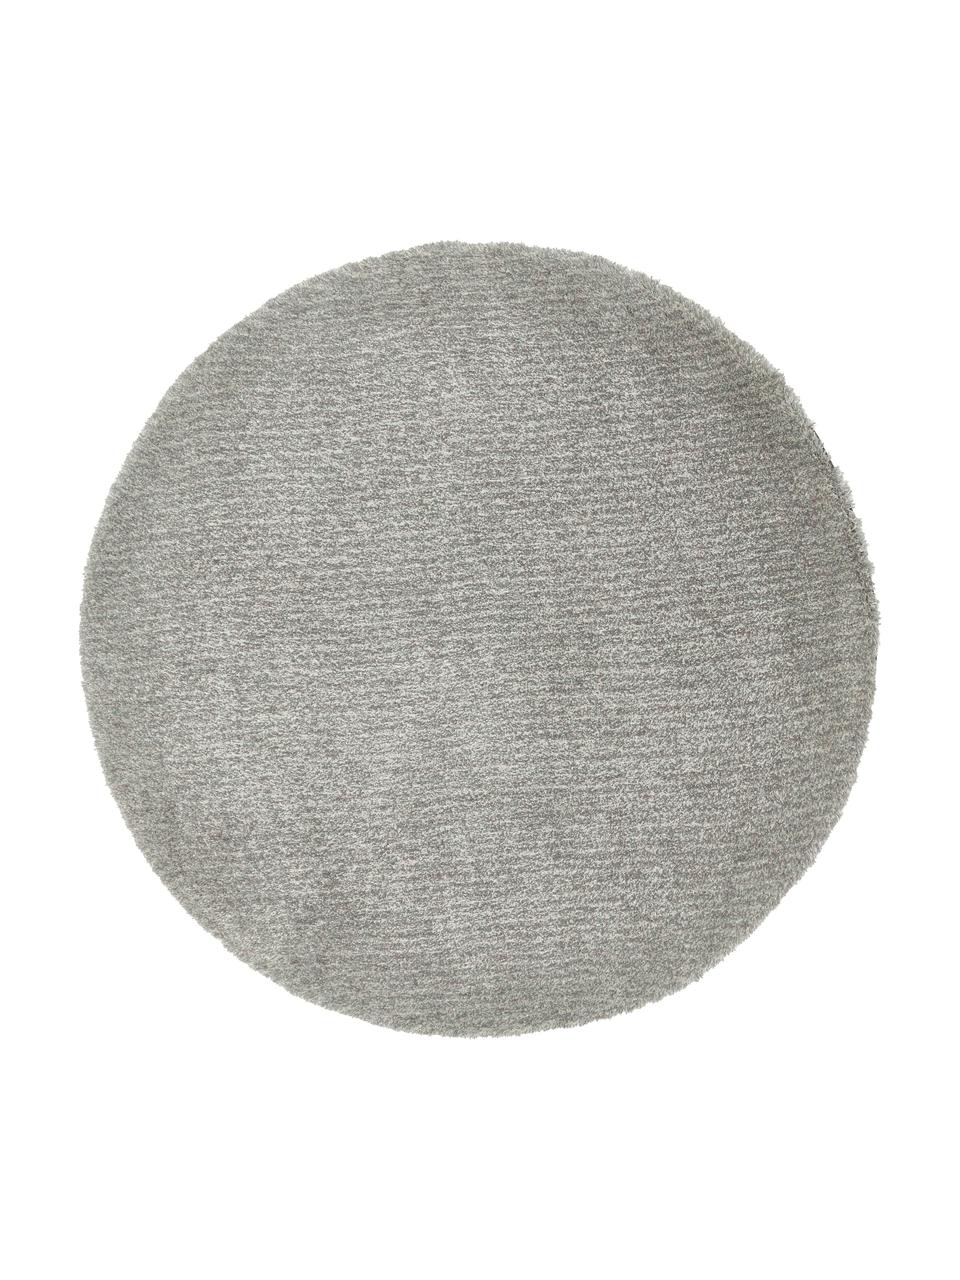 Fluffy rond hoogpolig vloerkleed Marsha in grijs/mintgroen, Grijstinten, B Ø 150 cm (maat M)